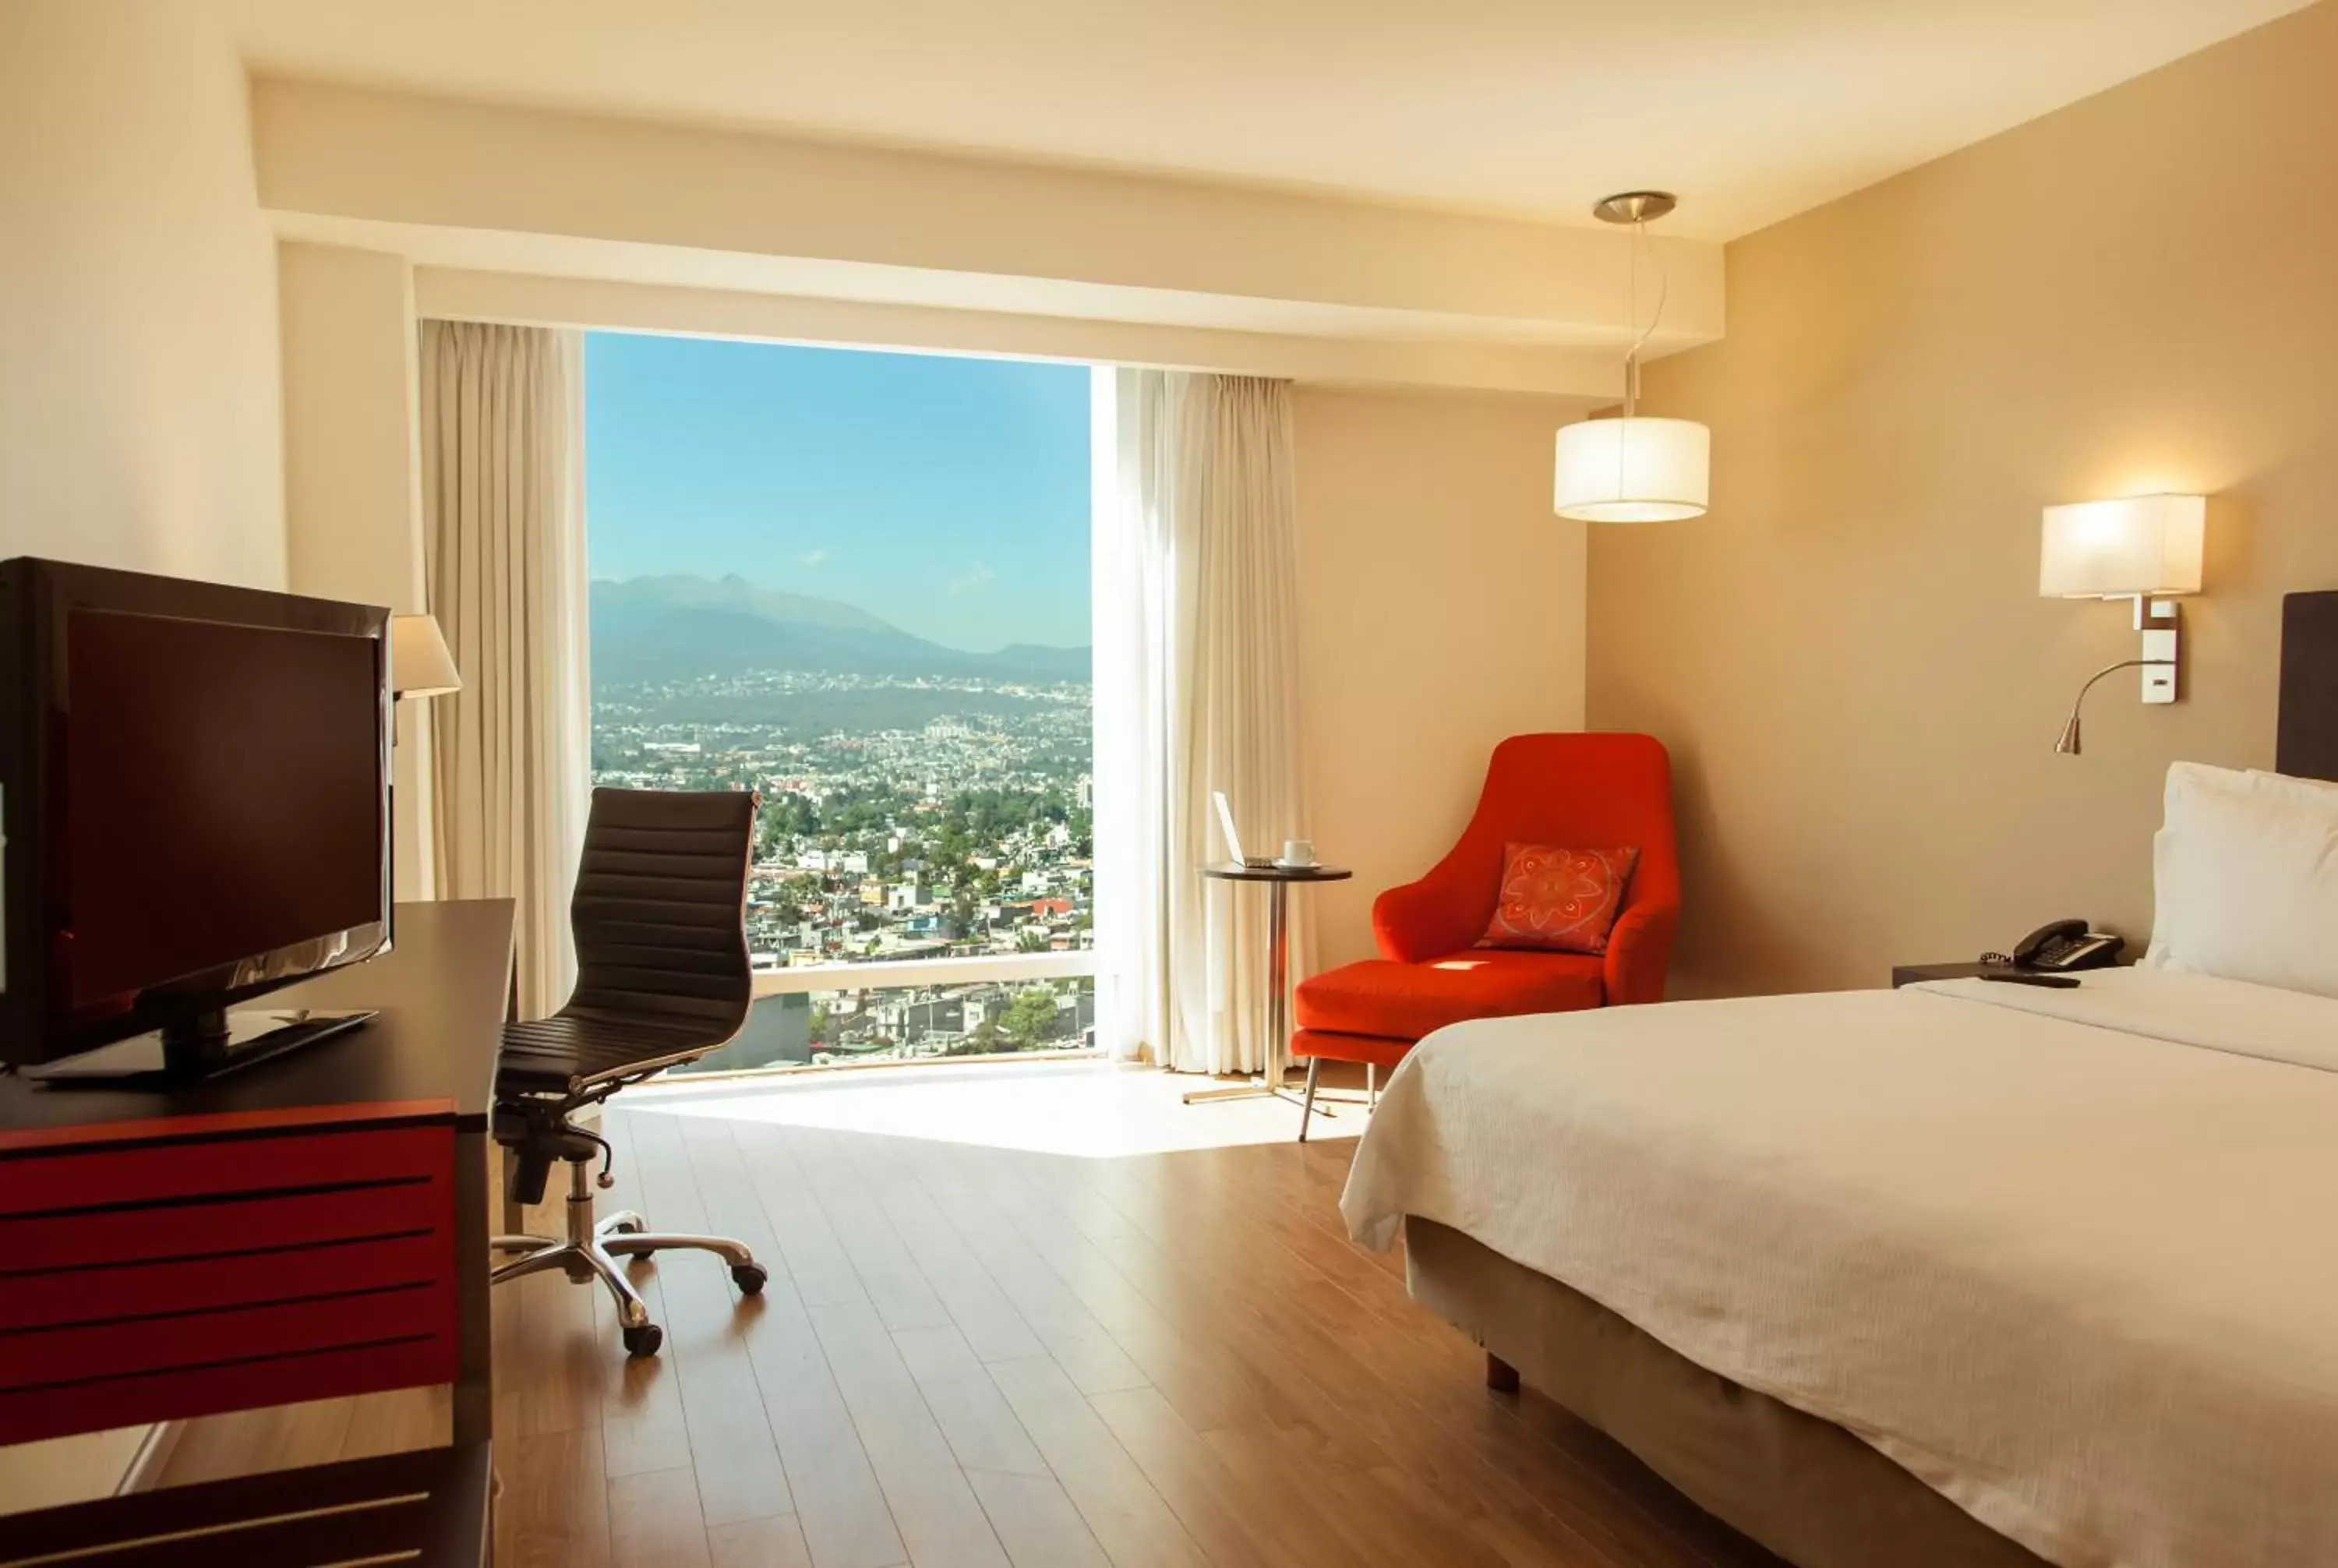 Bedroom, Mountain View in Fiesta Inn Periferico Sur